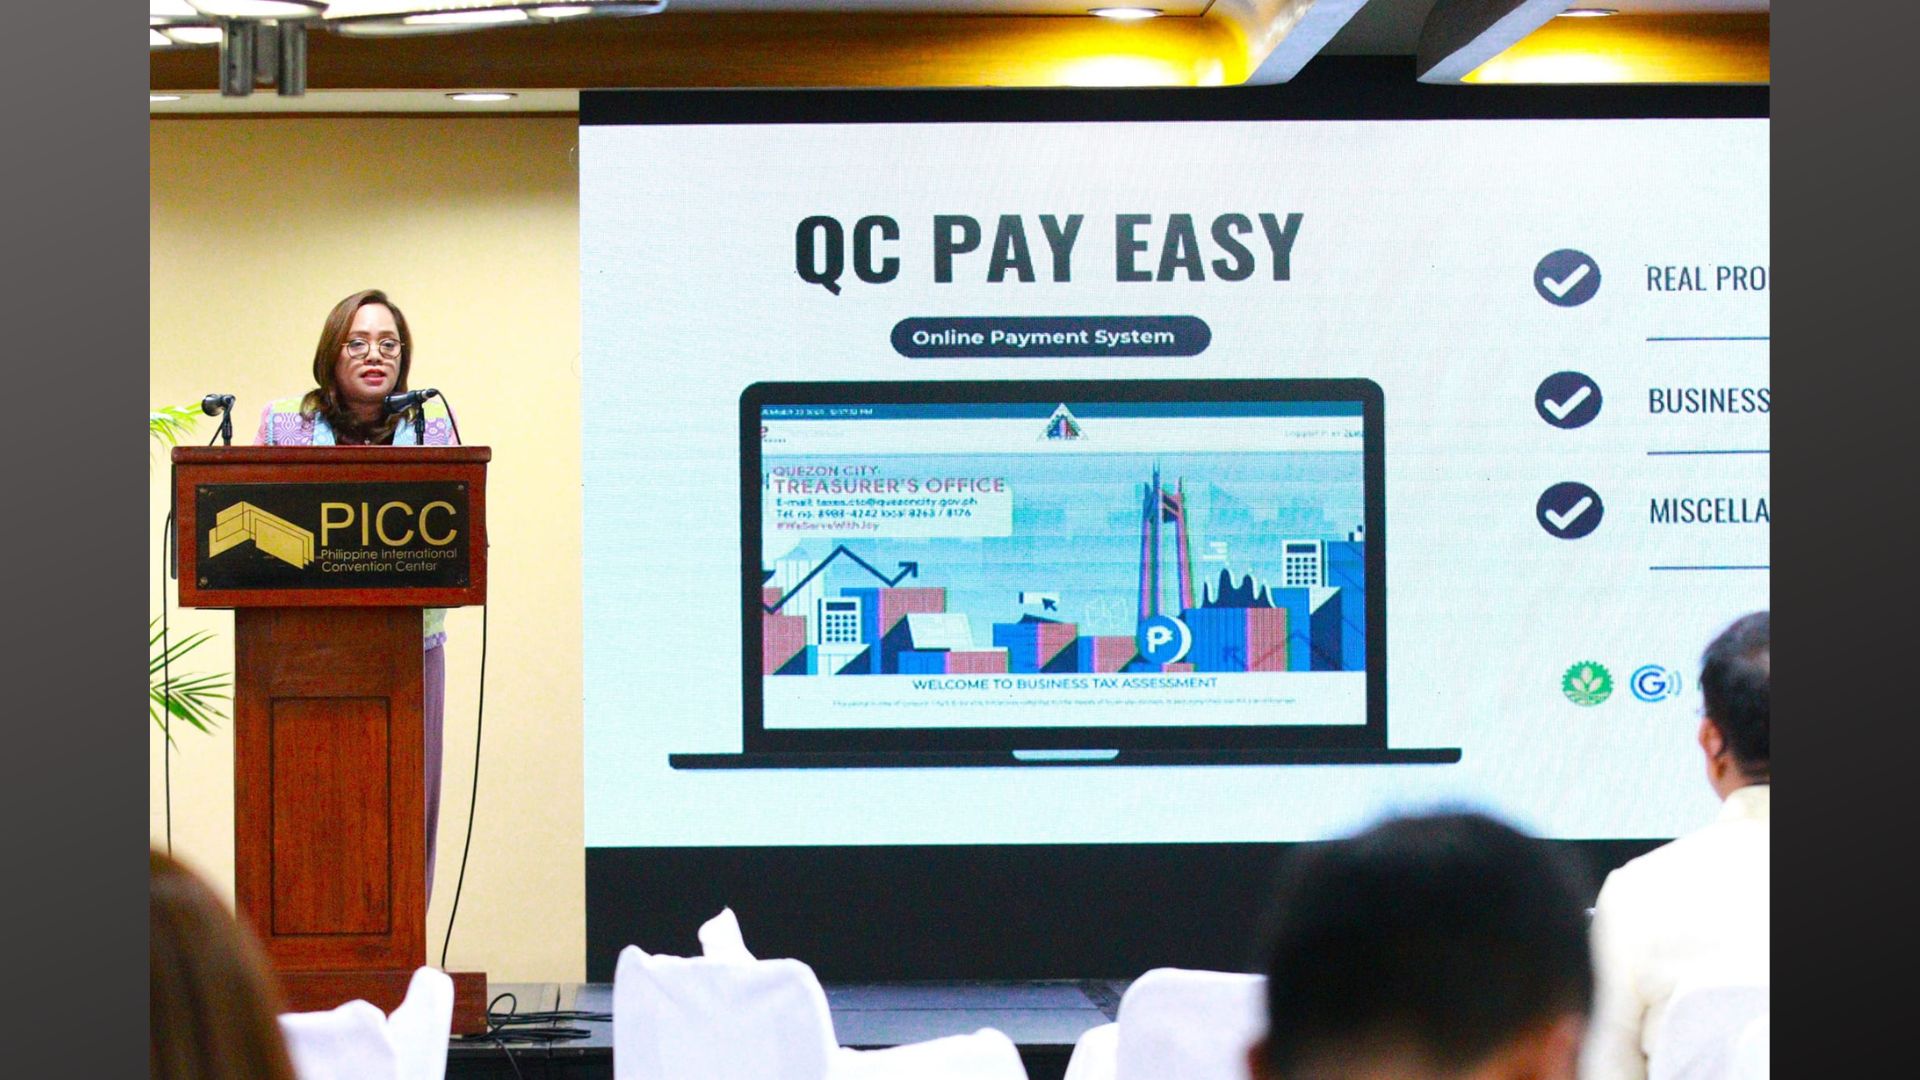 Pagbabayad ng business at real property taxes sa QC mas madali na para sa mga residente